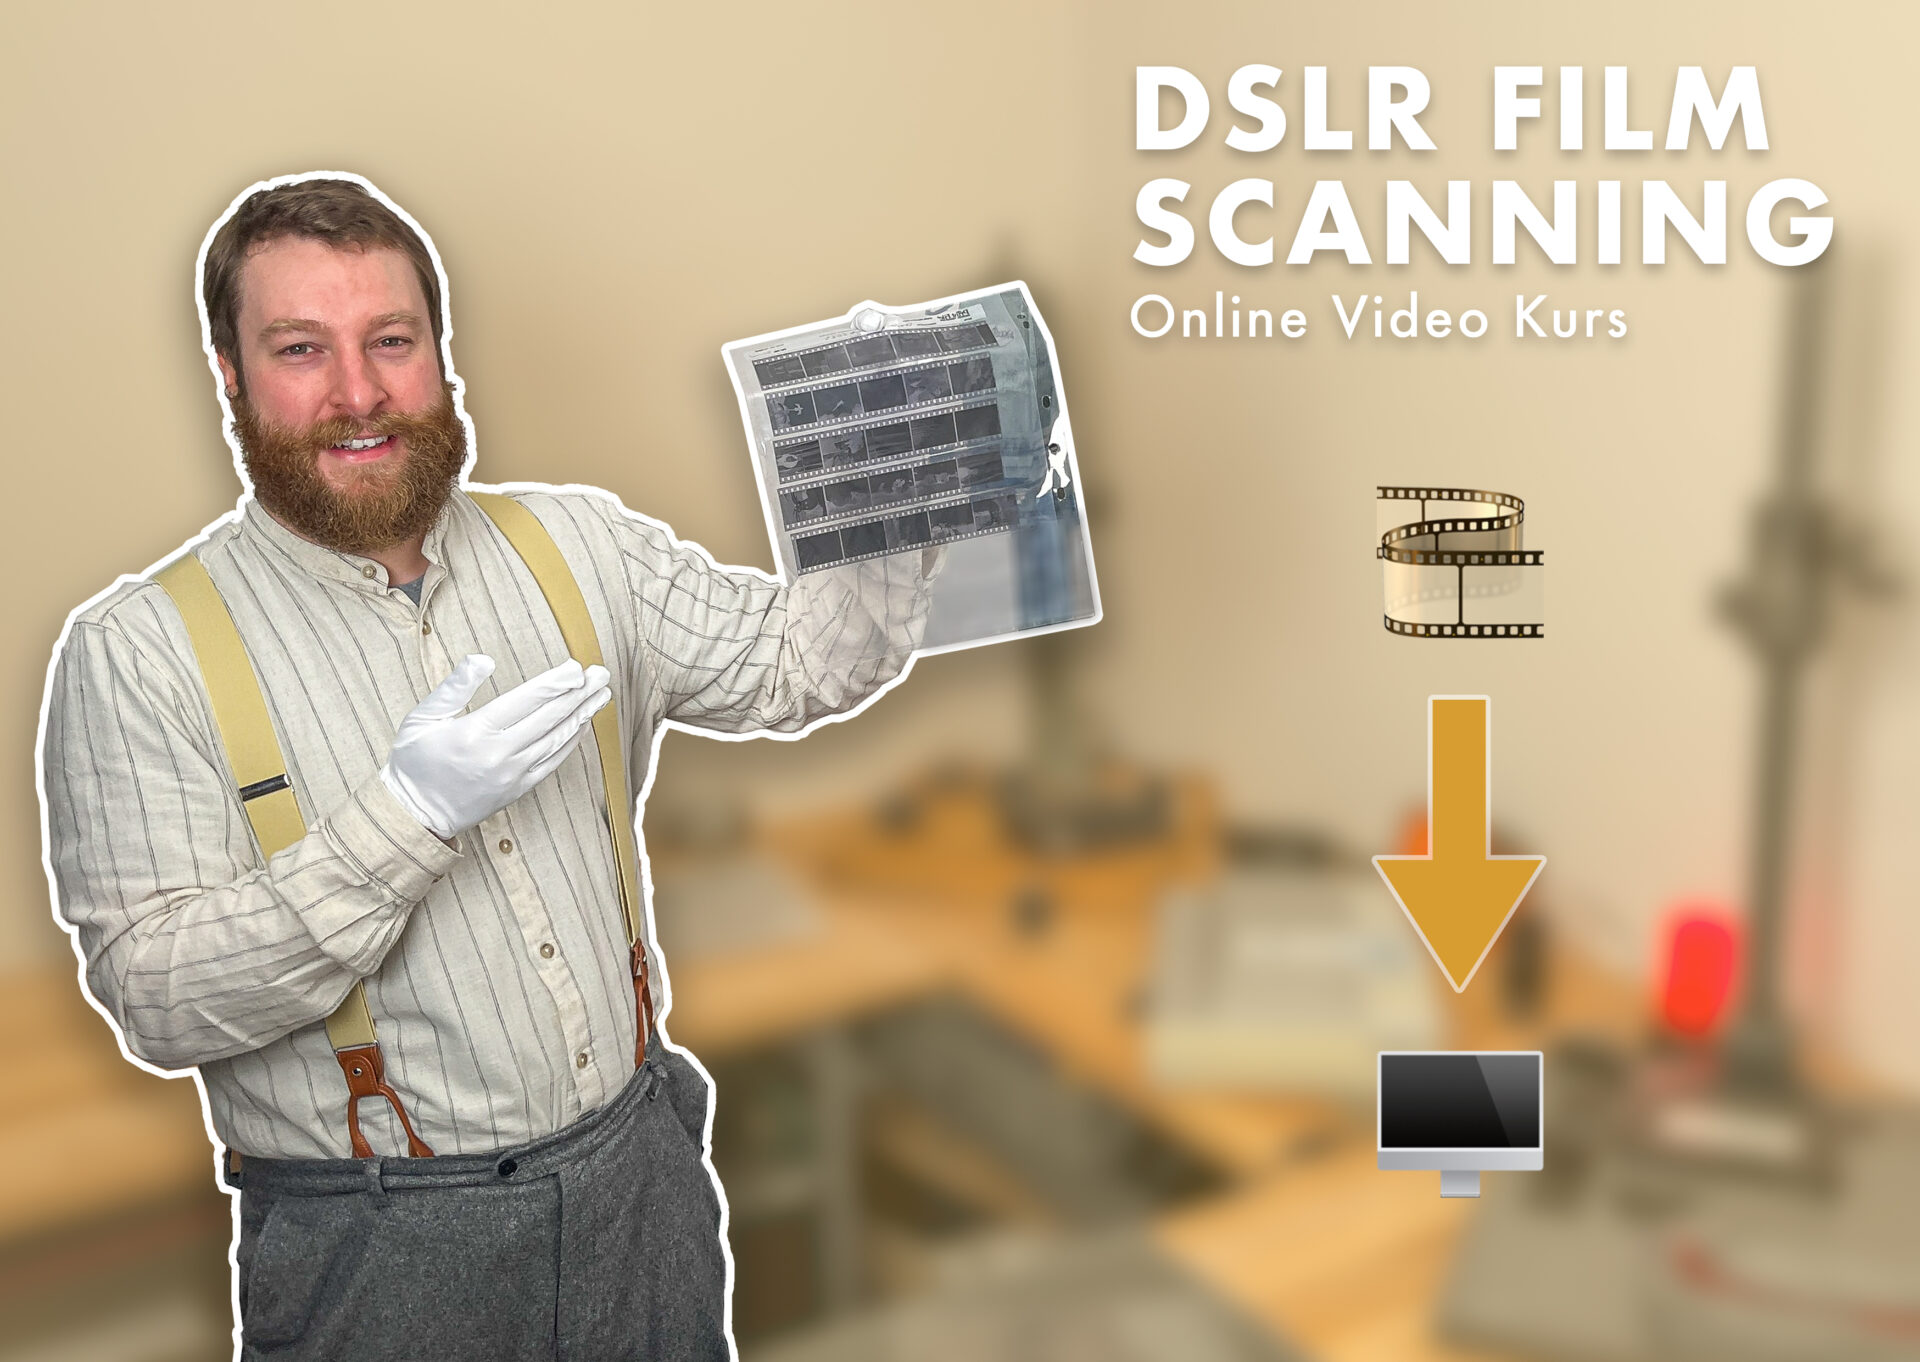 DSLR Film Scanning Online Kurs